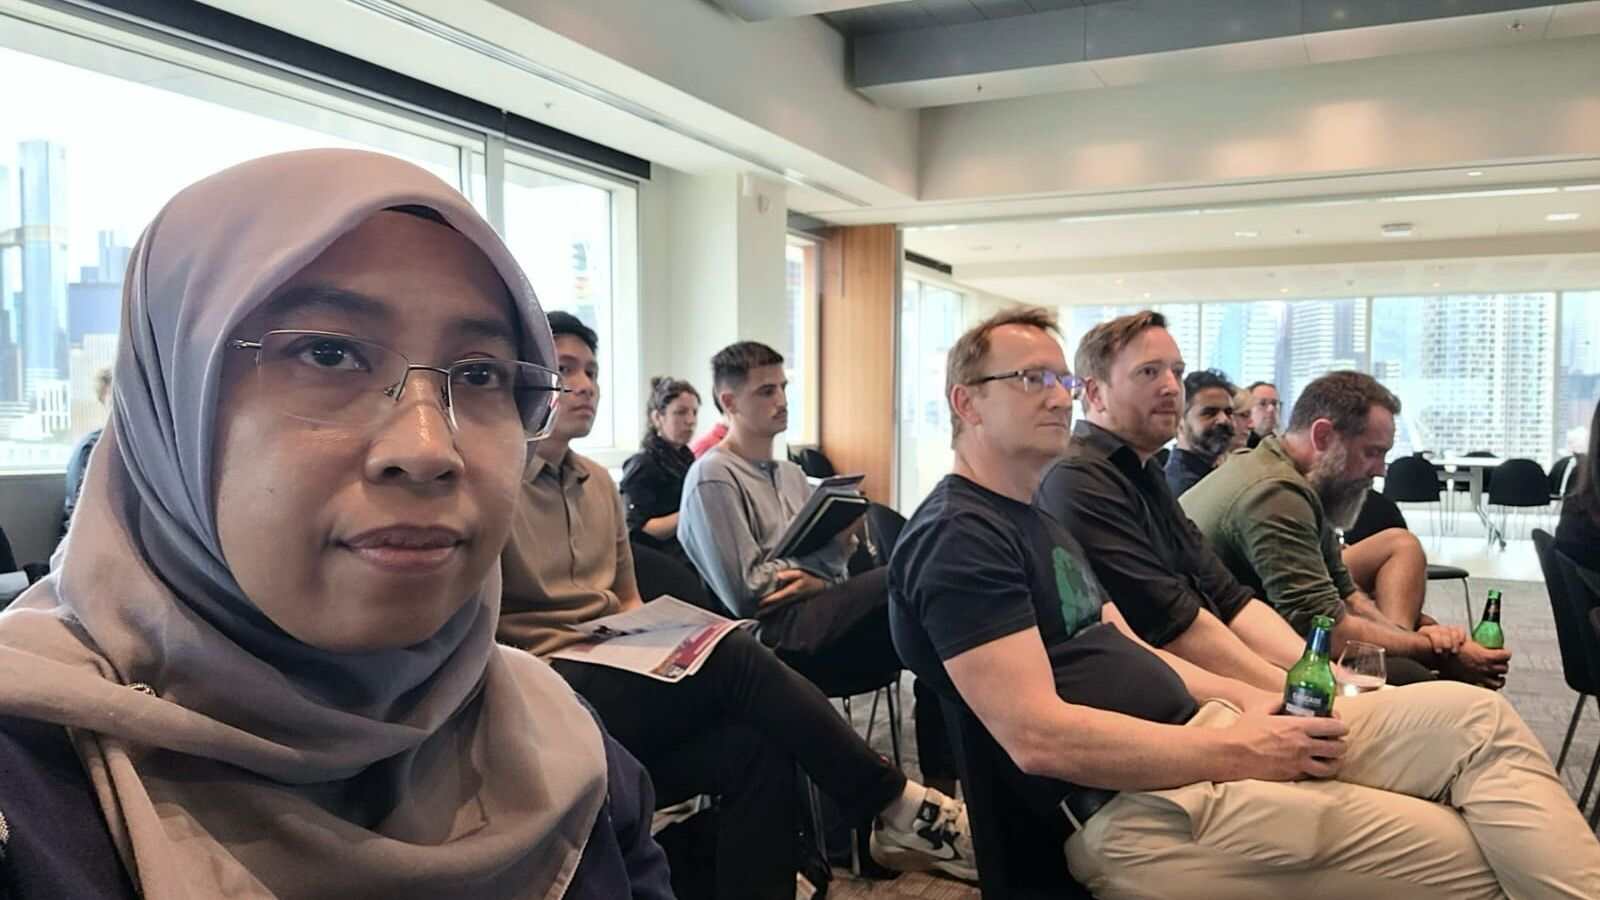 Plt Kadis Kominfo dan Plt Kepala DLH Makassar Hadiri Diskusi Panel Bersama Praktisi Hingga Ahli Bidang AI di Australia